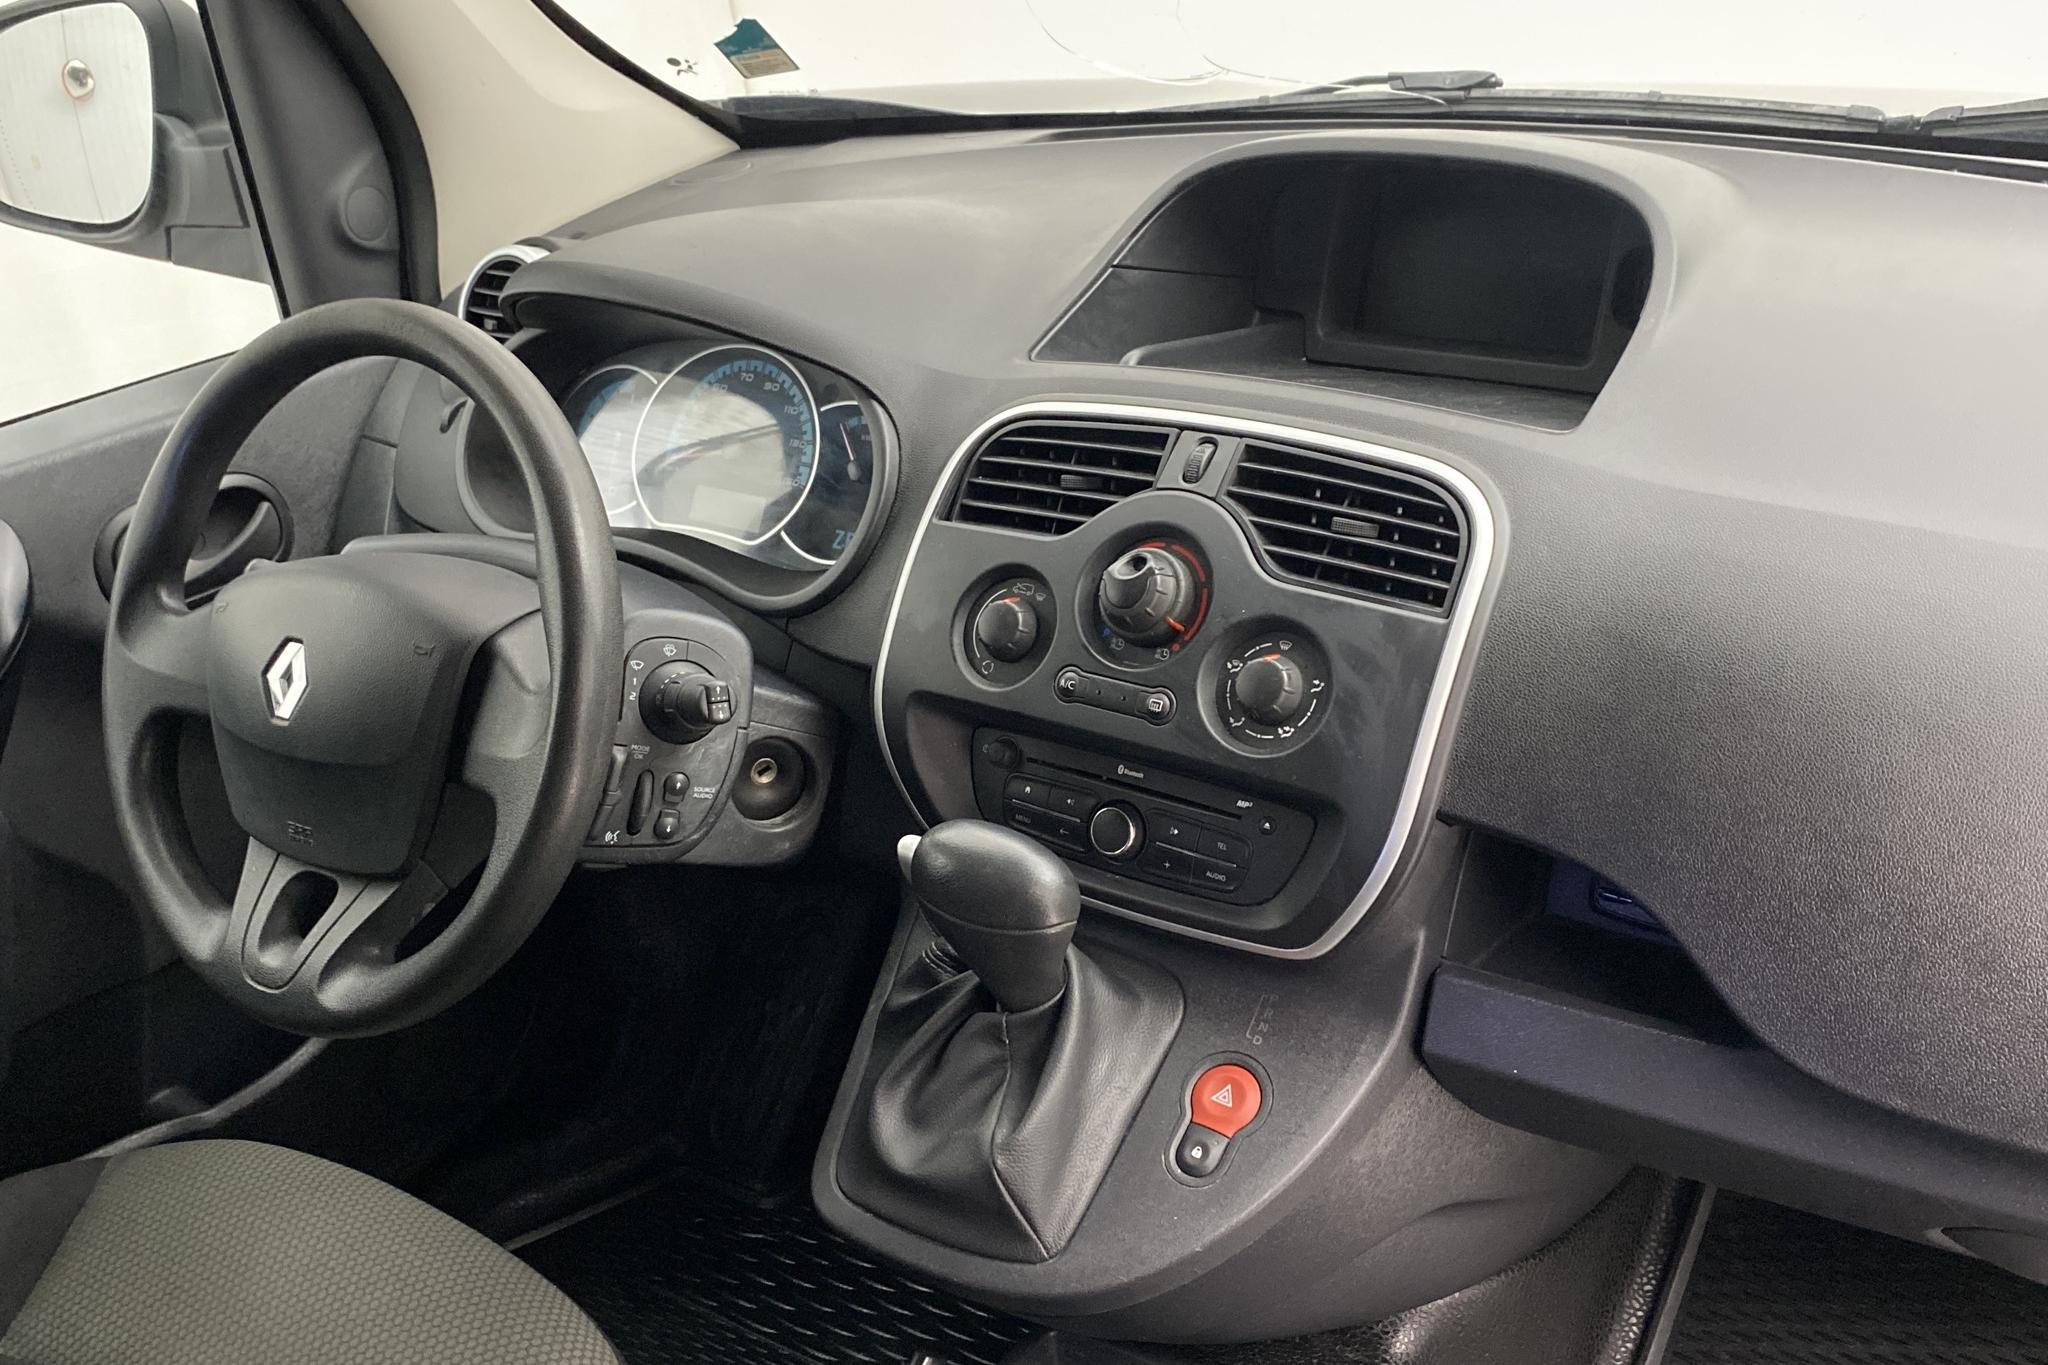 Renault Kangoo Z.E Power Plus 33 kWh Maxi Skåp (60hk) - 52 570 km - Automatic - black - 2019